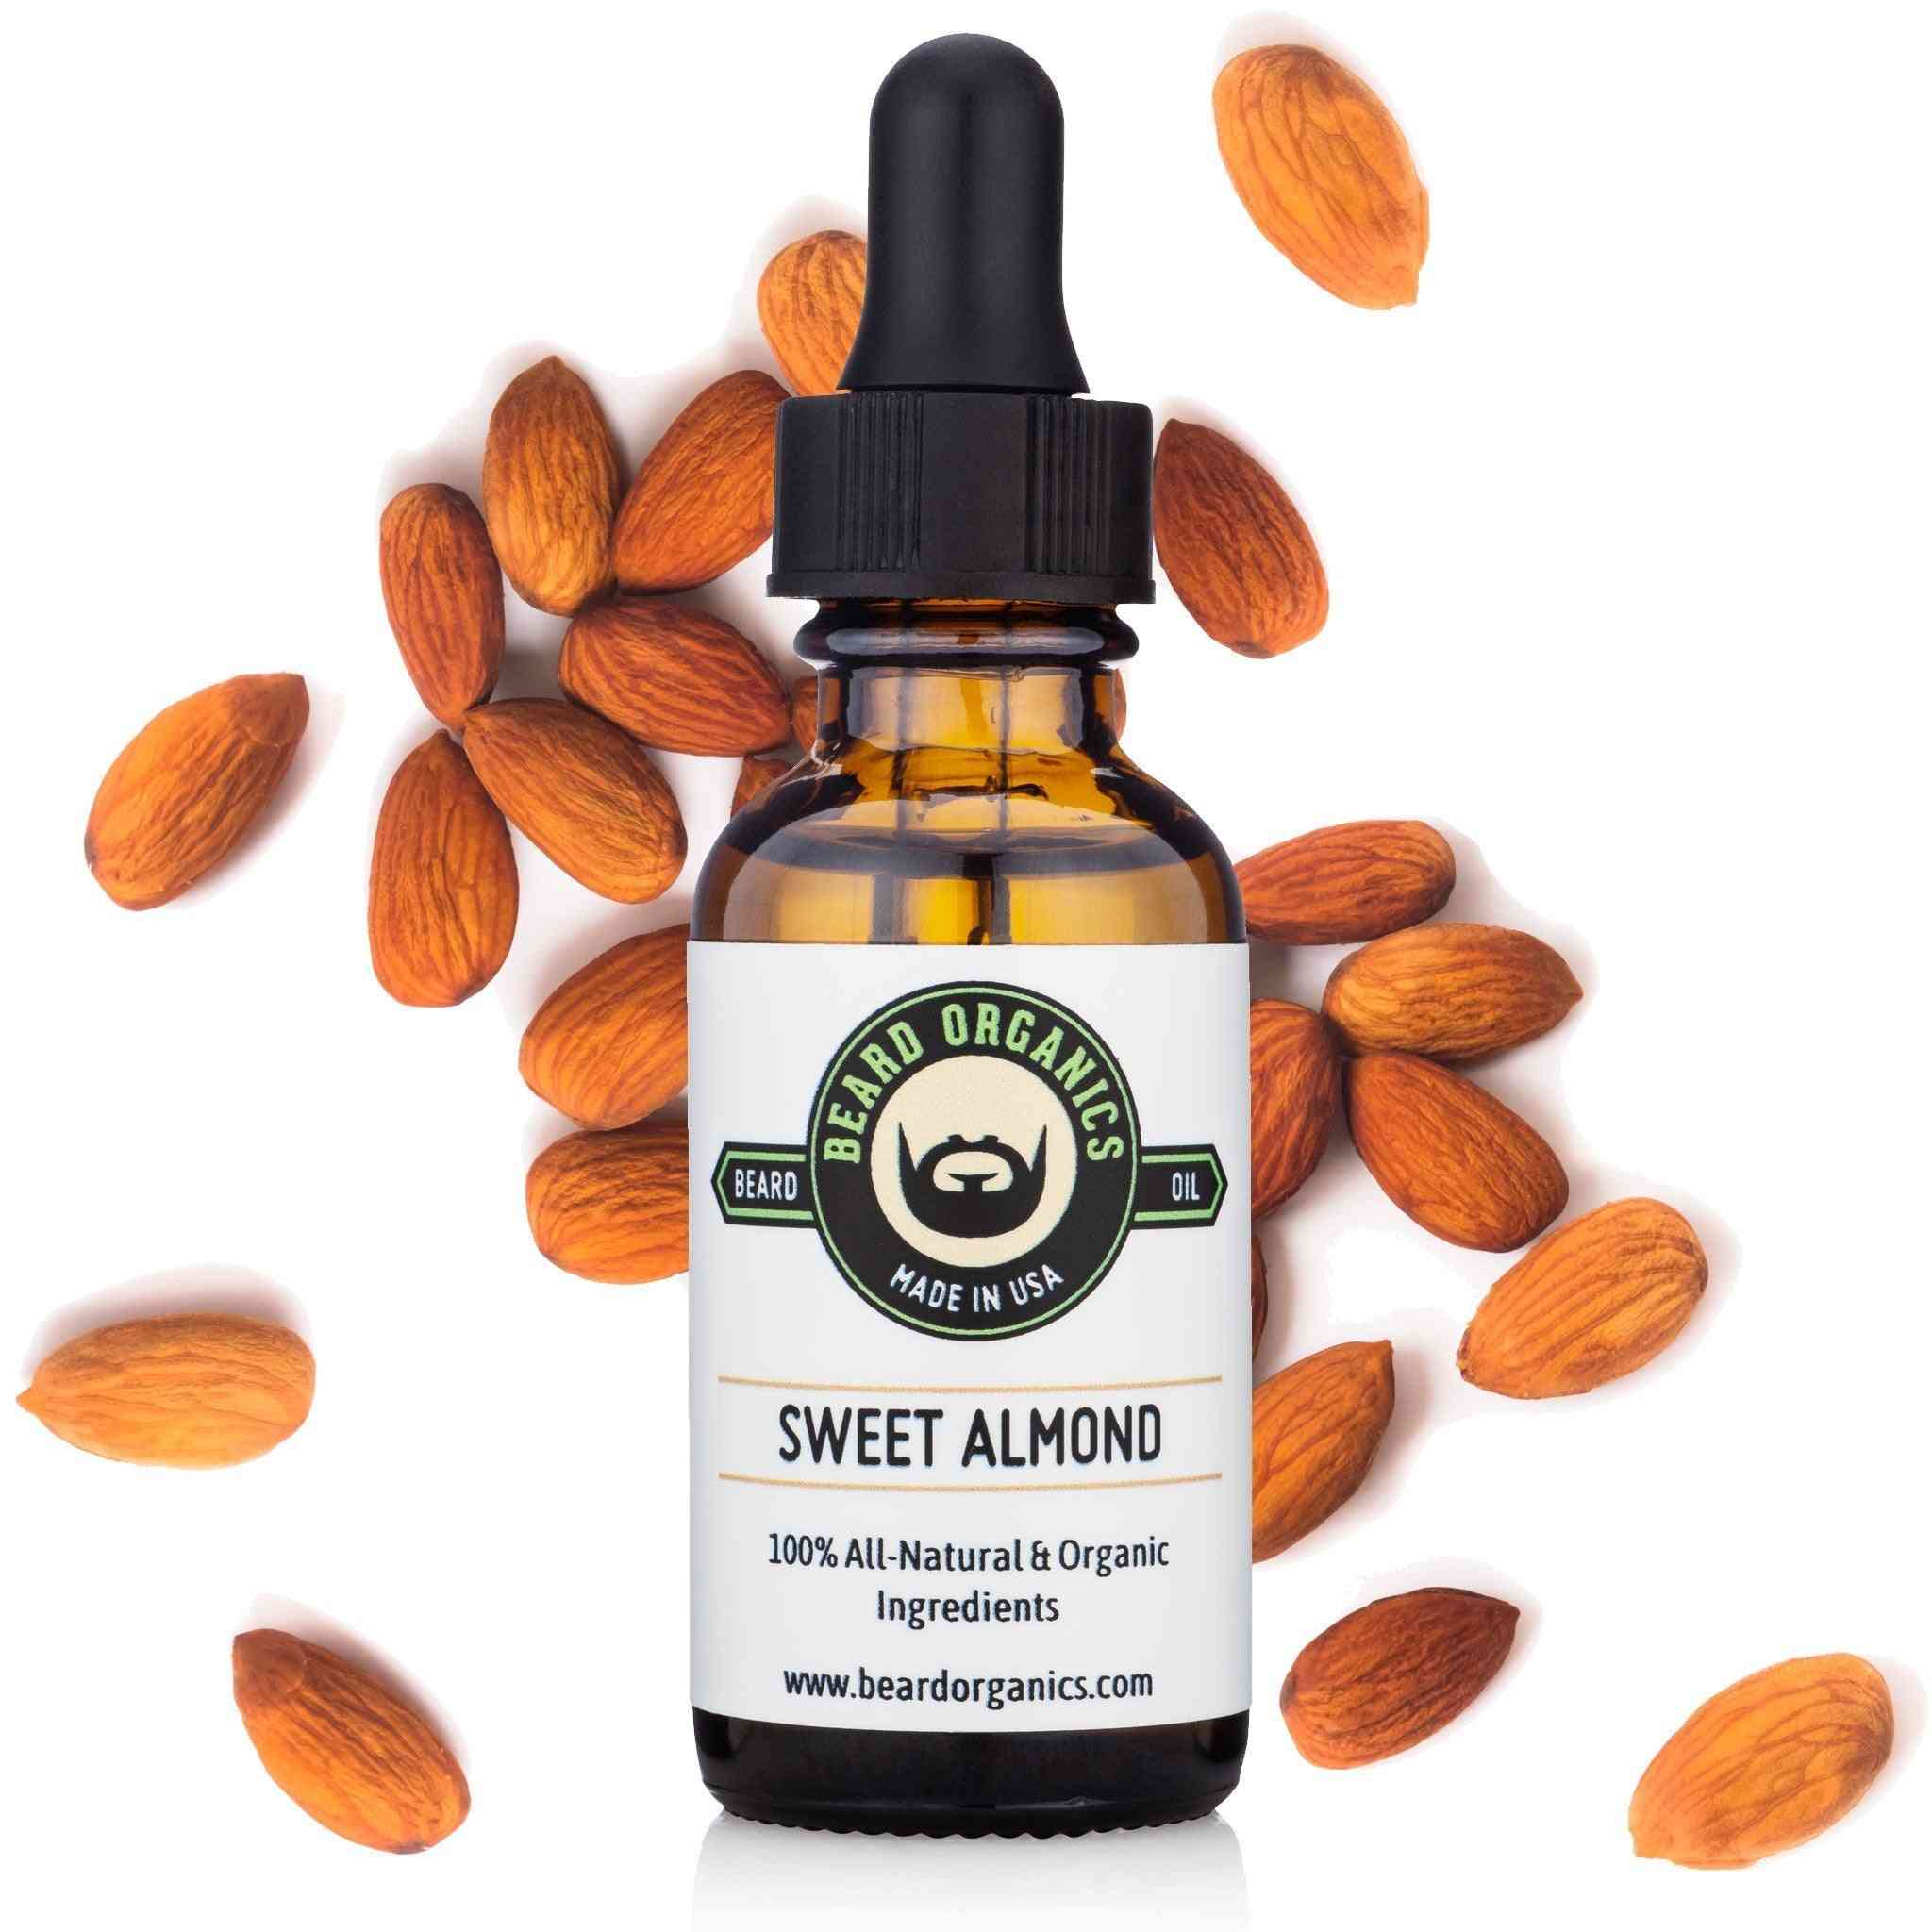 Sweet Almond Beard Oil